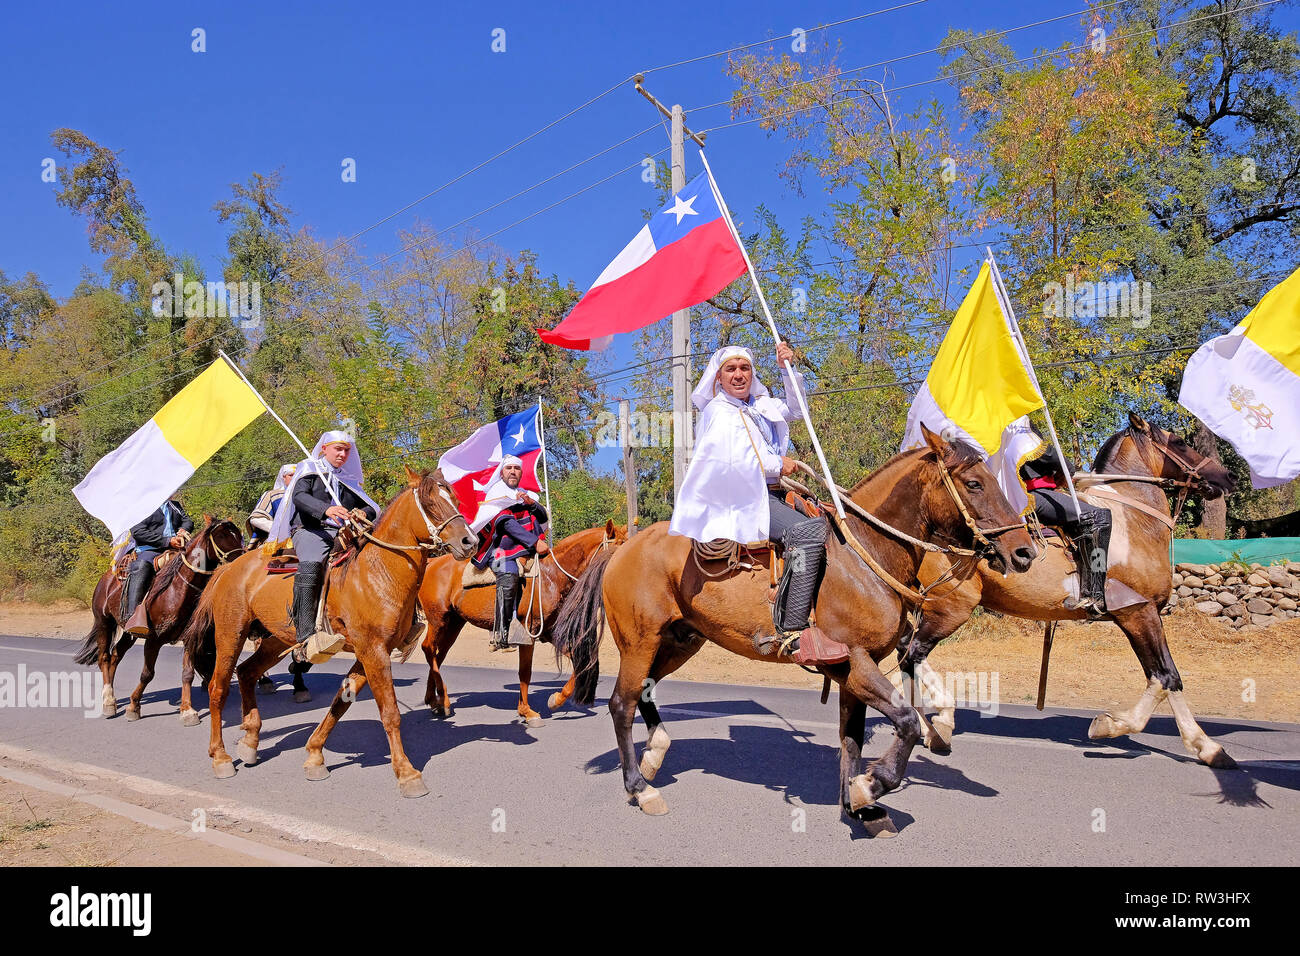 PIRQUE, SANTIAGO DE CHILE, APRIL 8, 2018: Riders at the Fiesta De Cuasimodo festival in Pirque, Chile on April 8, 2018 Stock Photo